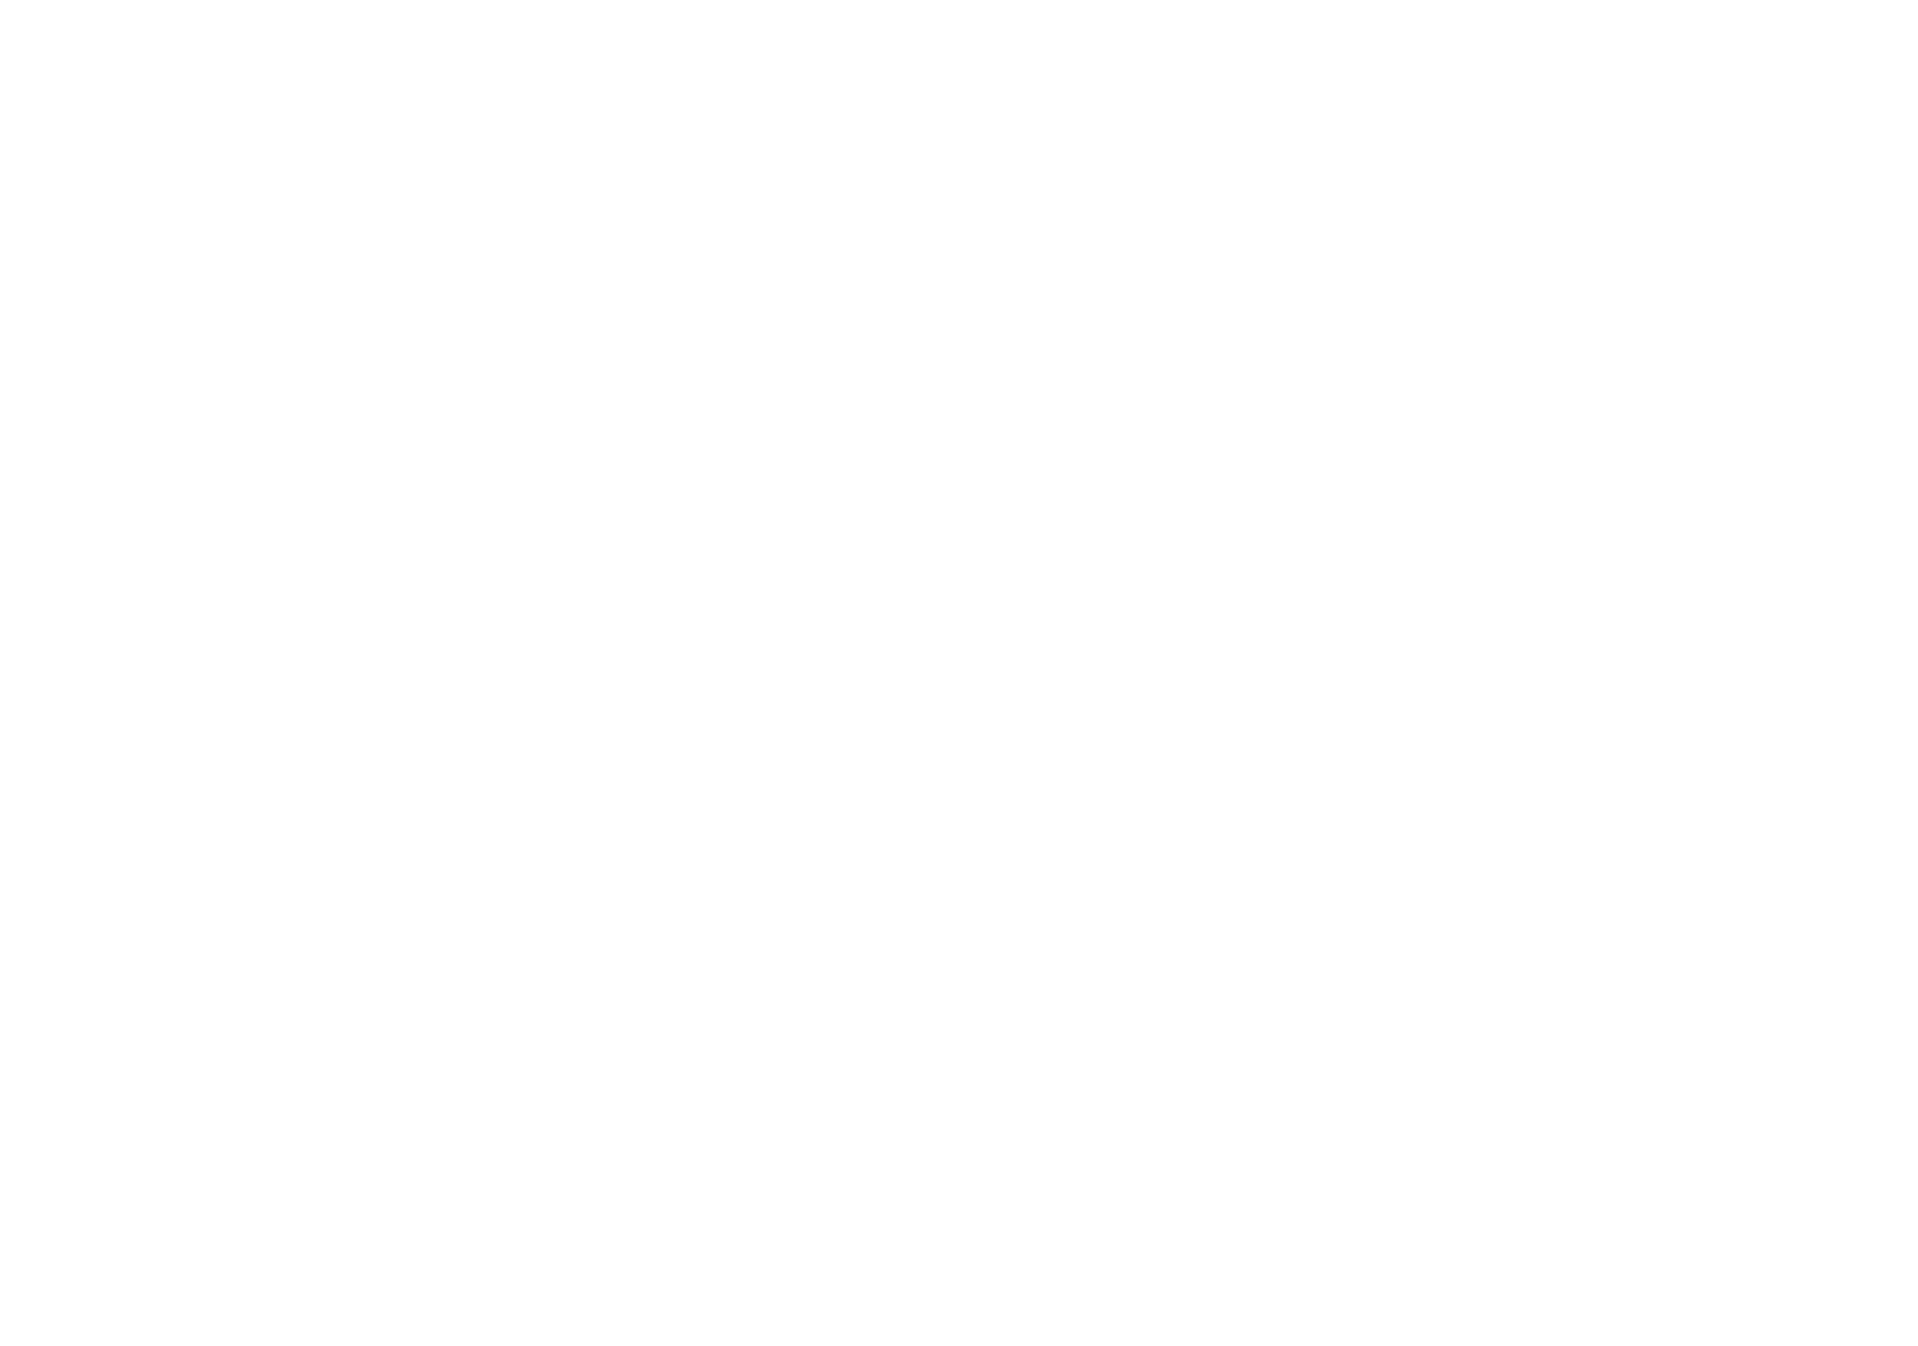 Media | Atlas For Media Services